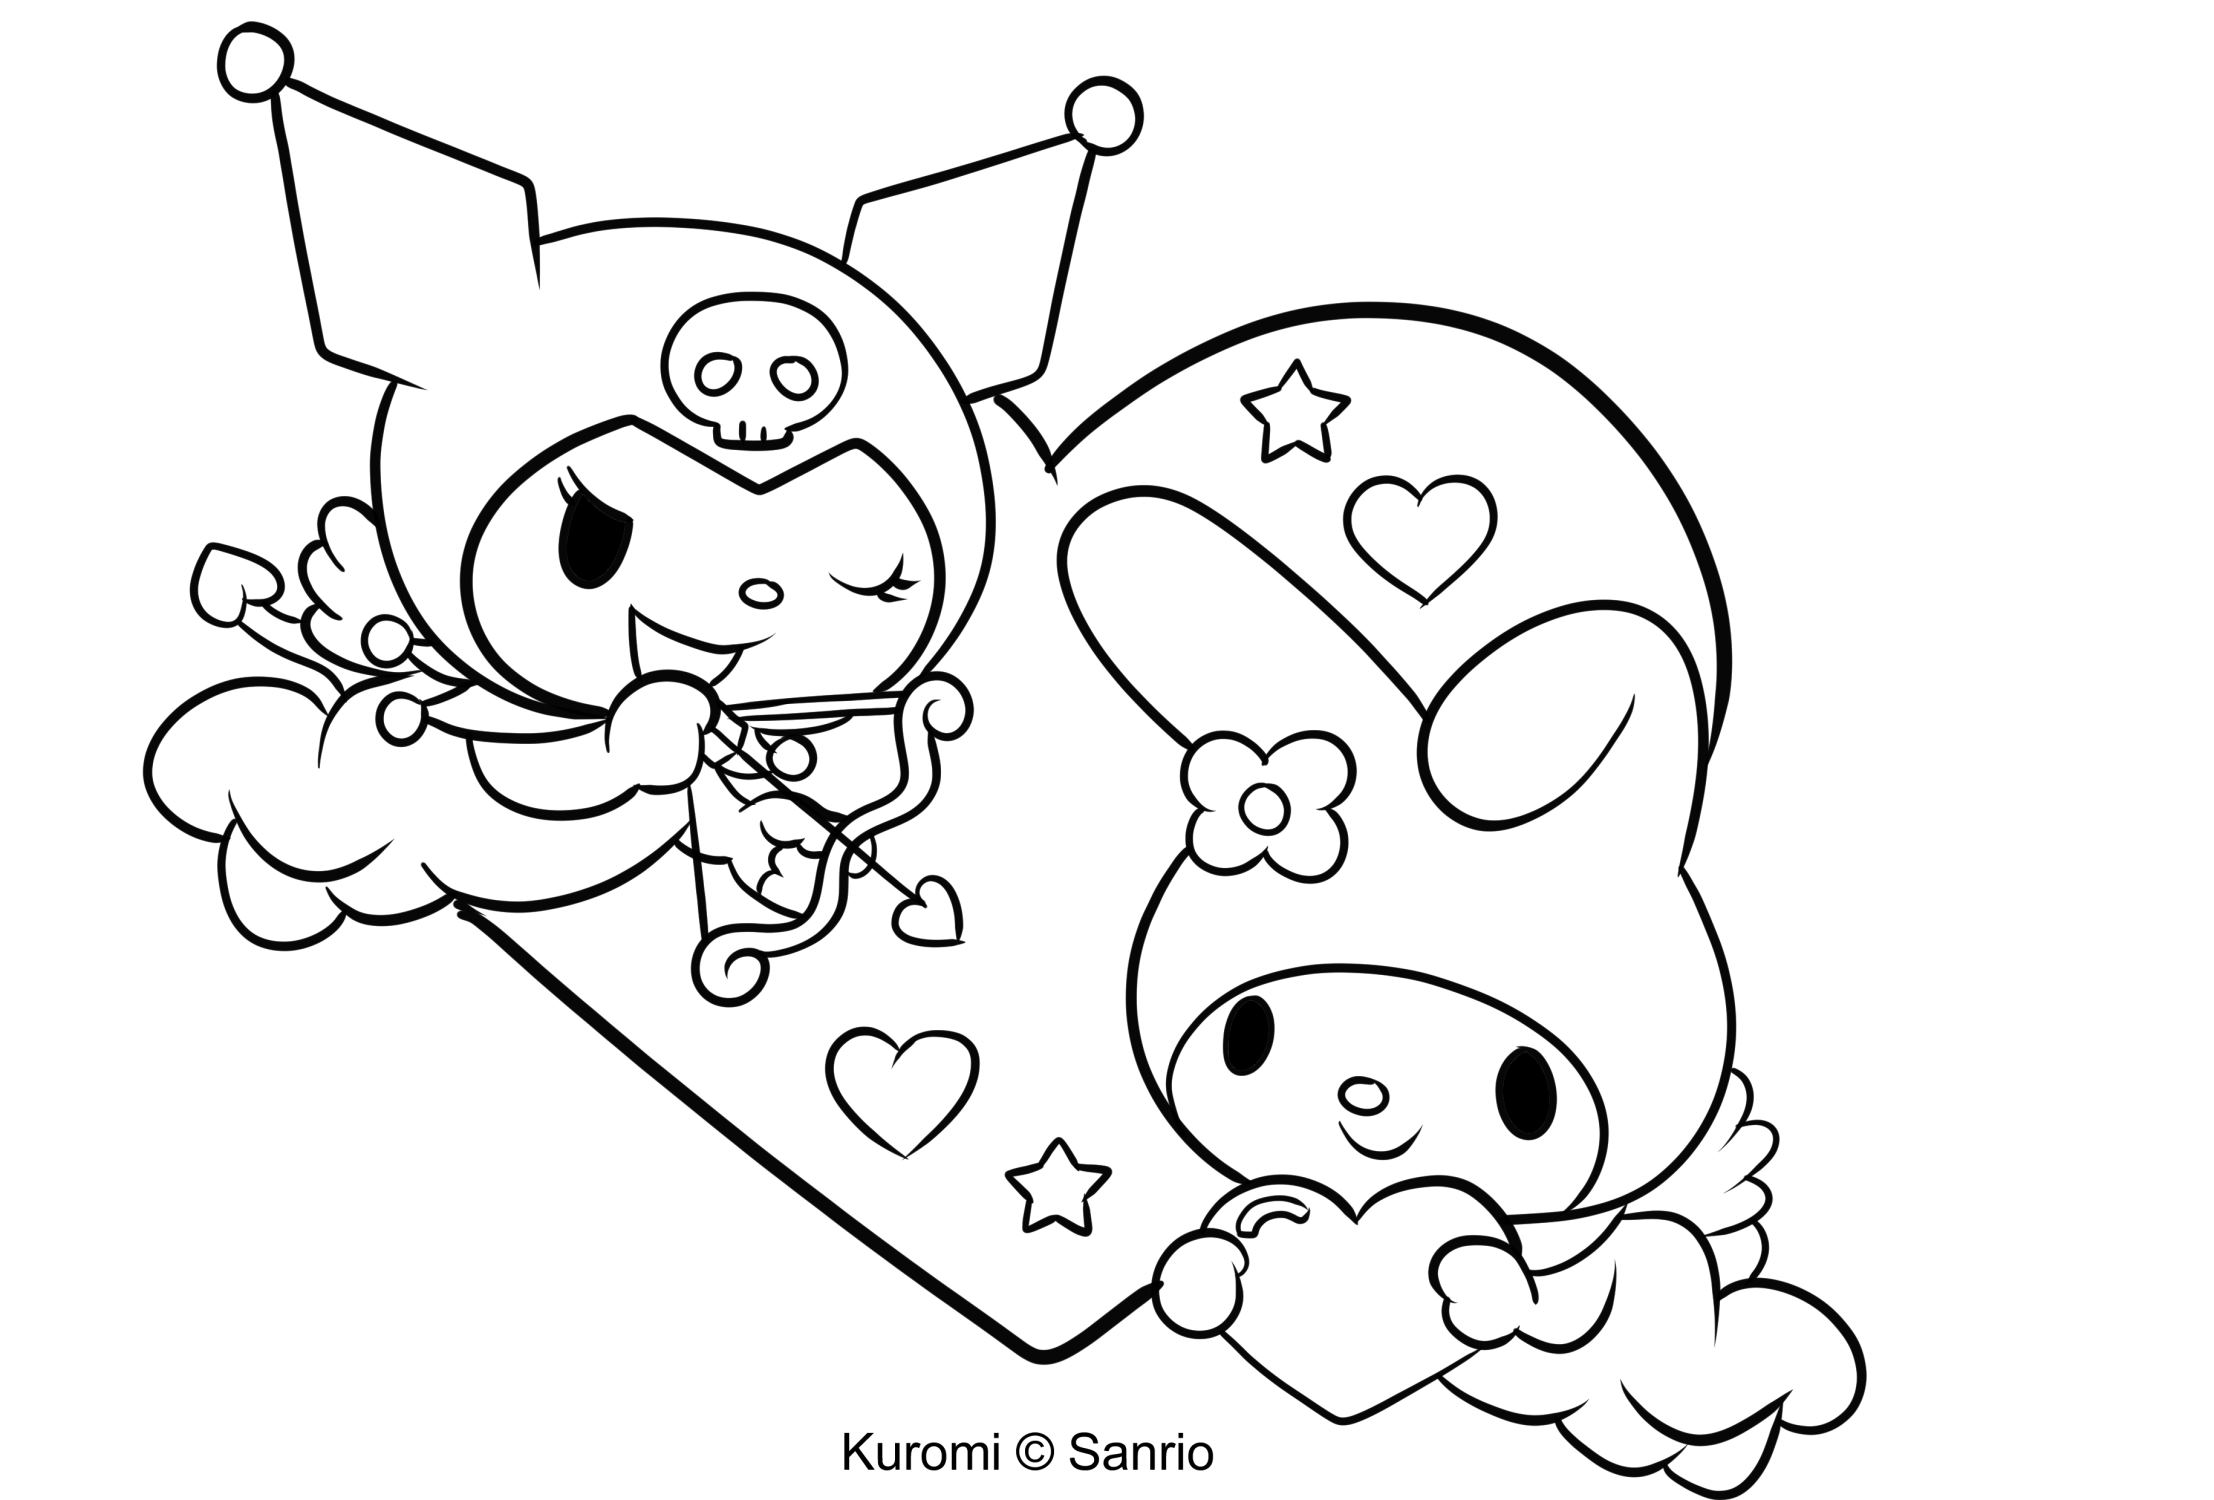 Debuxo de Kuromi 23 de My Melody para imprimir e colorear